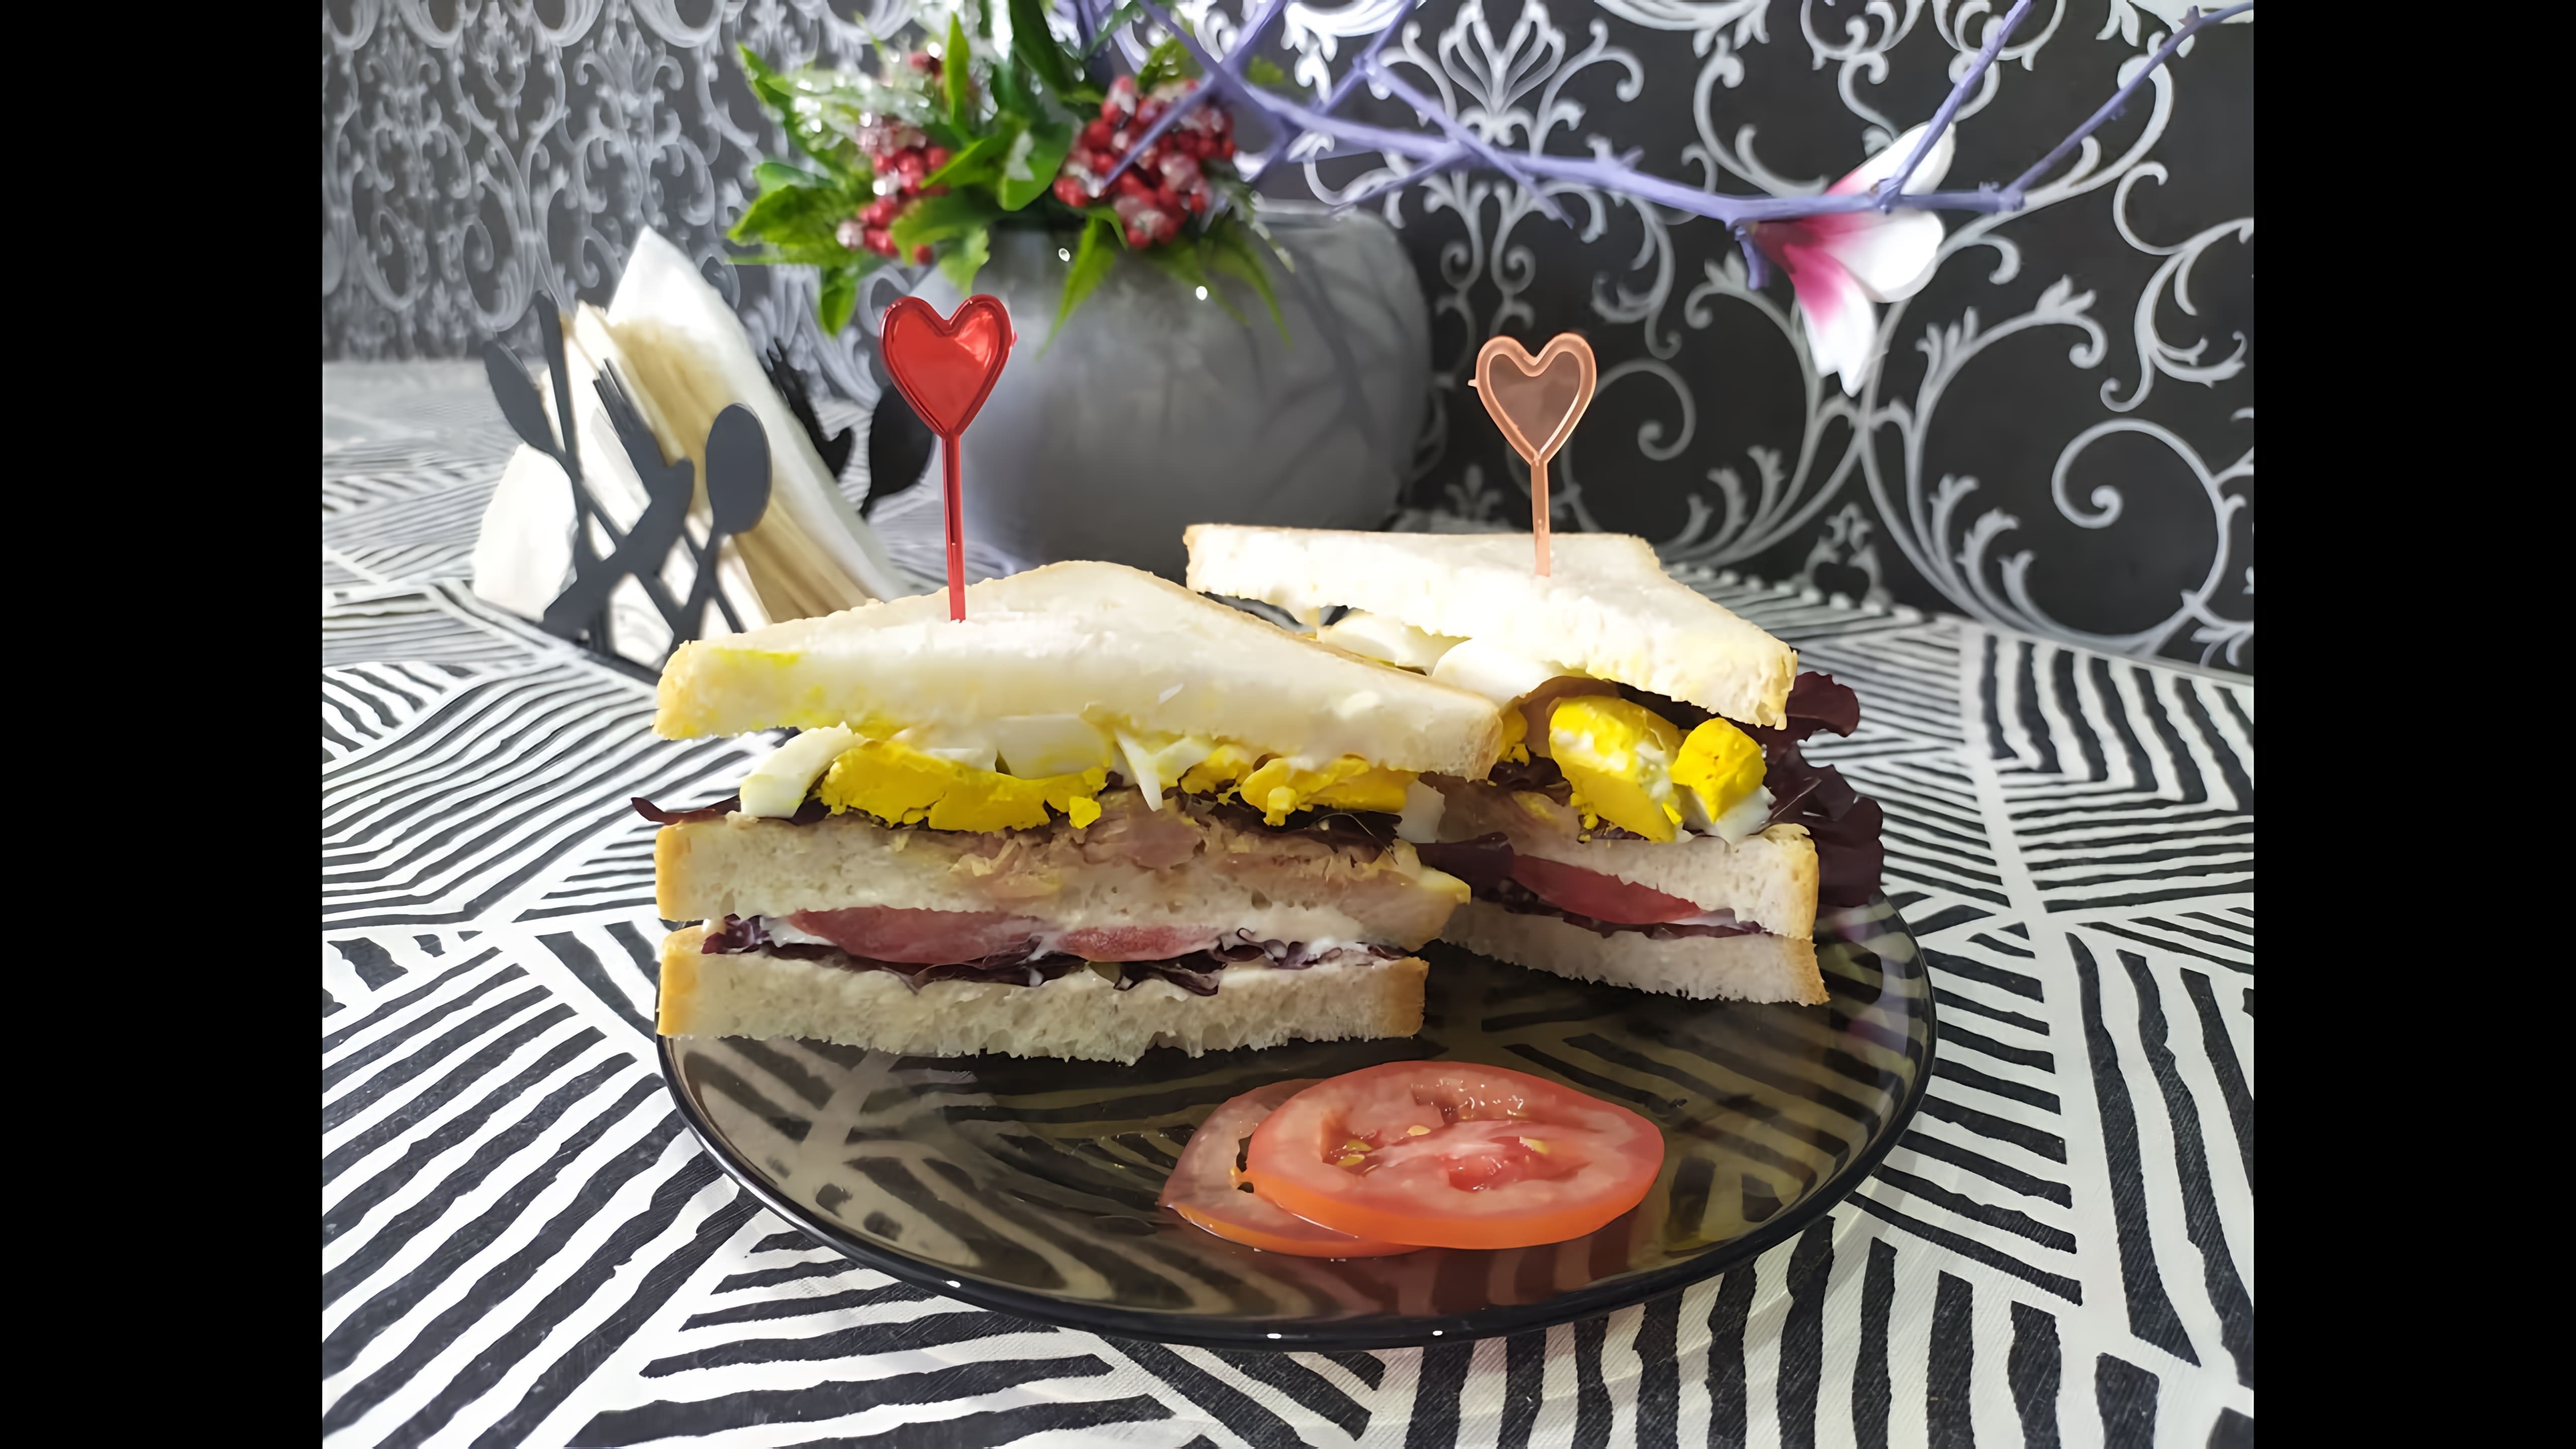 Сэндвич с тунцом - это вкусный и питательный завтрак, который можно приготовить быстро и легко